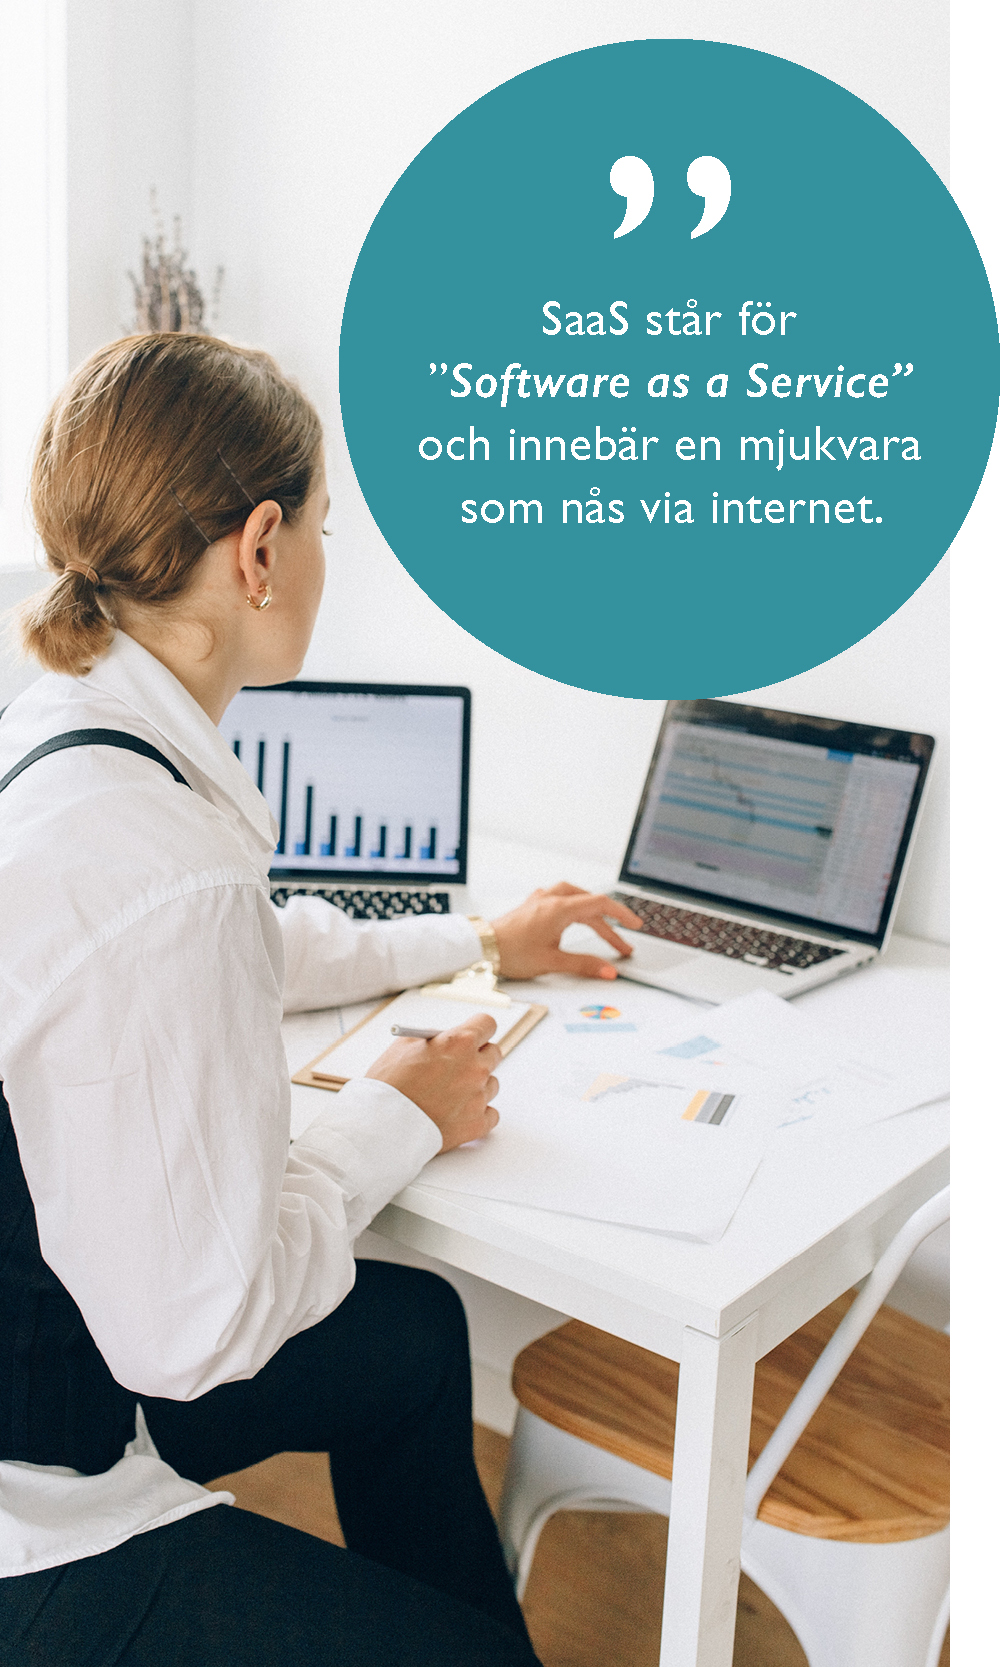 "SaaS står för Software as a Service och innebär en mjukvara som nås via internet."